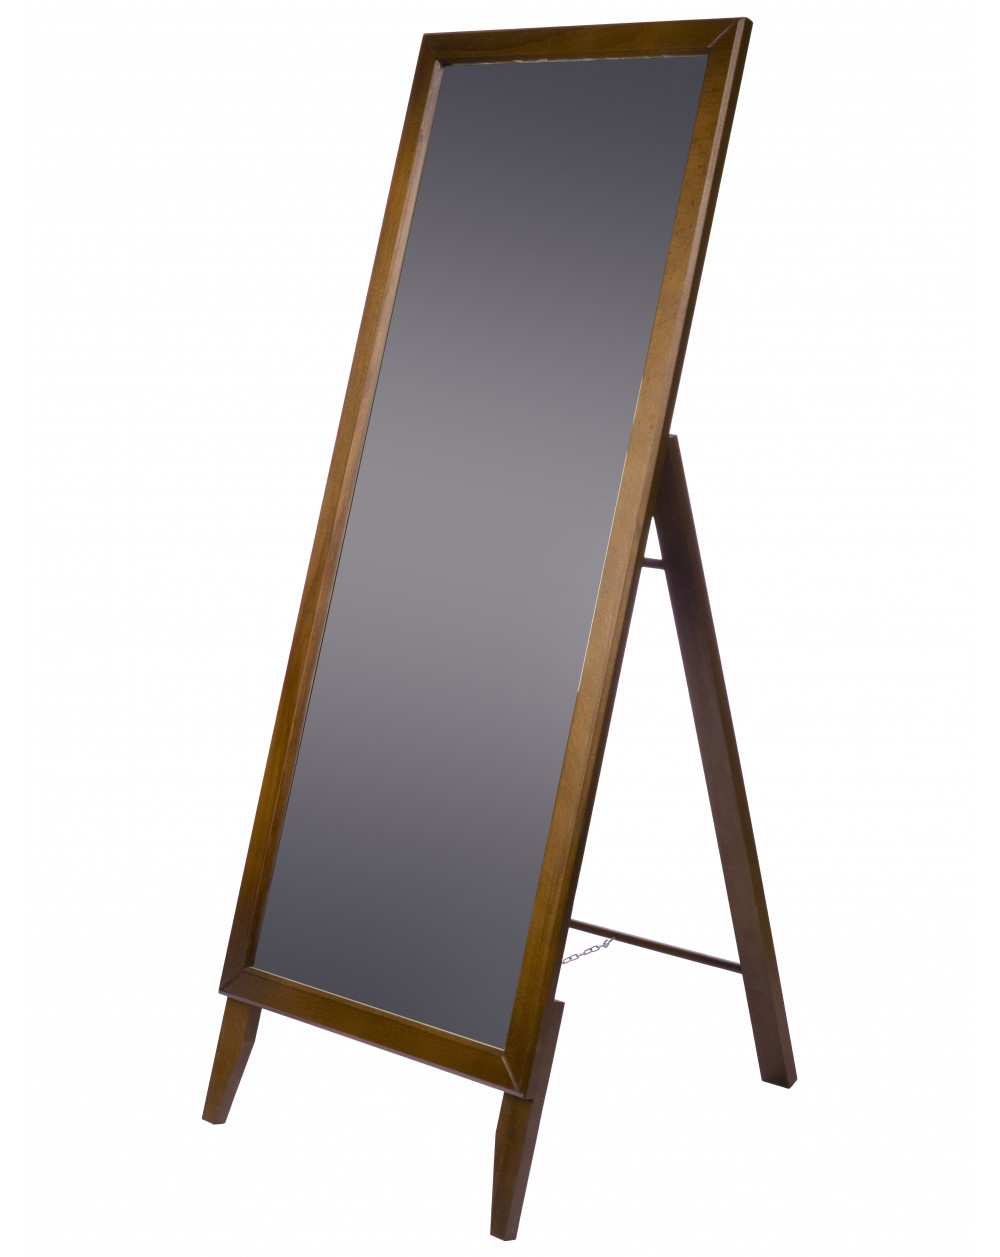 Зеркало напольное BeautyStyle 29 средне-коричневый 131 см х 47,1 см фото Stolmag